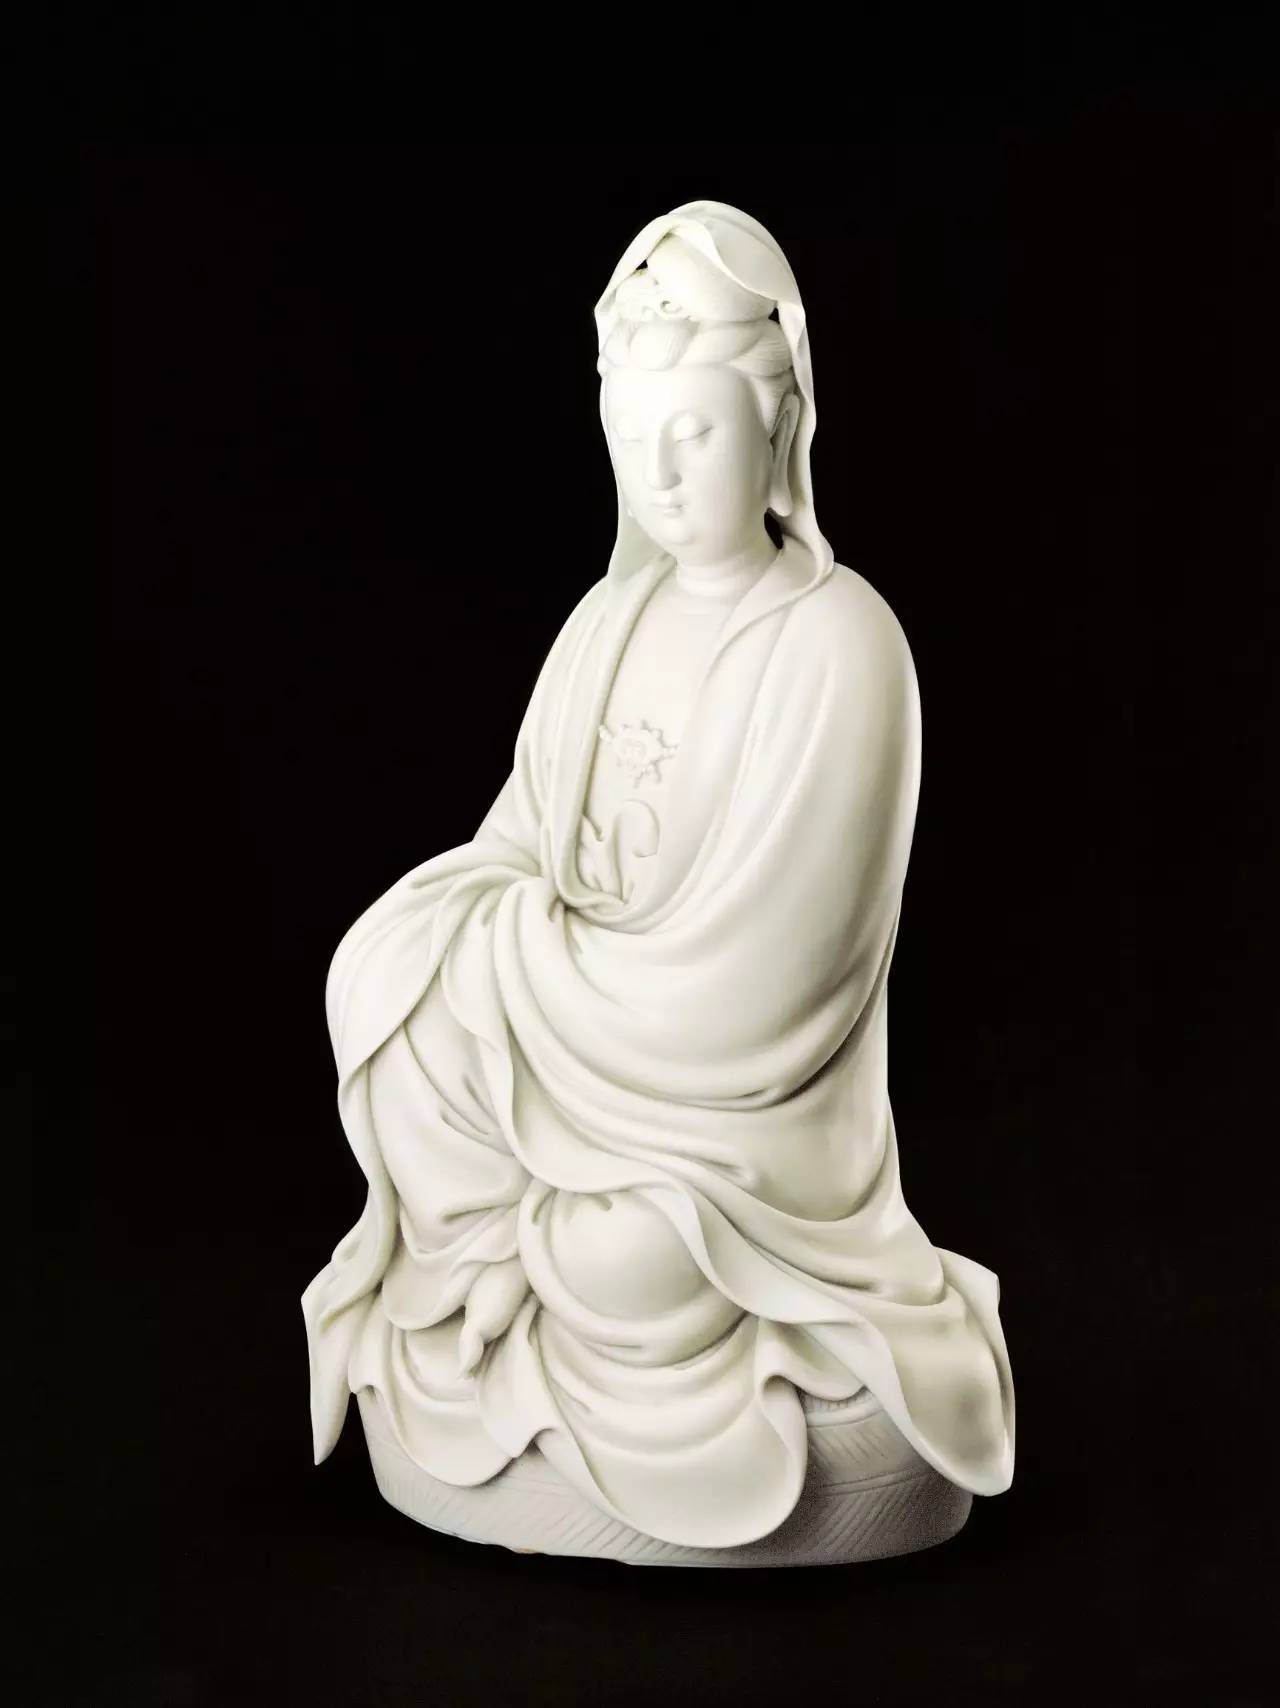 明德化窯白釉觀音坐像(北京故宮博物院藏品)